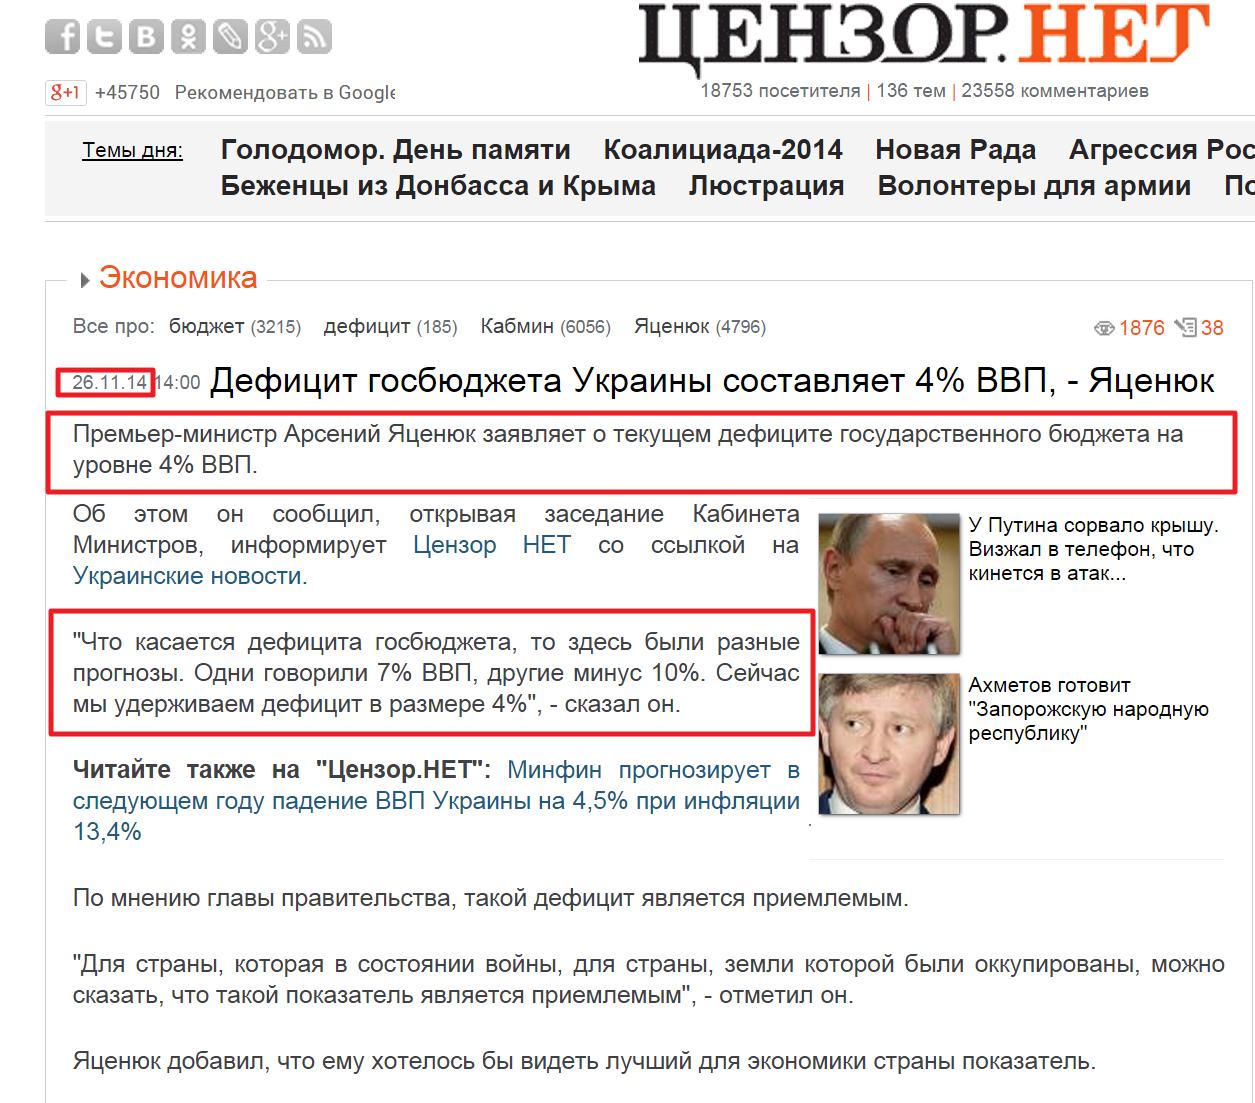 http://censor.net.ua/news/313666/defitsit_gosbyudjeta_ukrainy_sostavlyaet_4_vvp_yatsenyuk